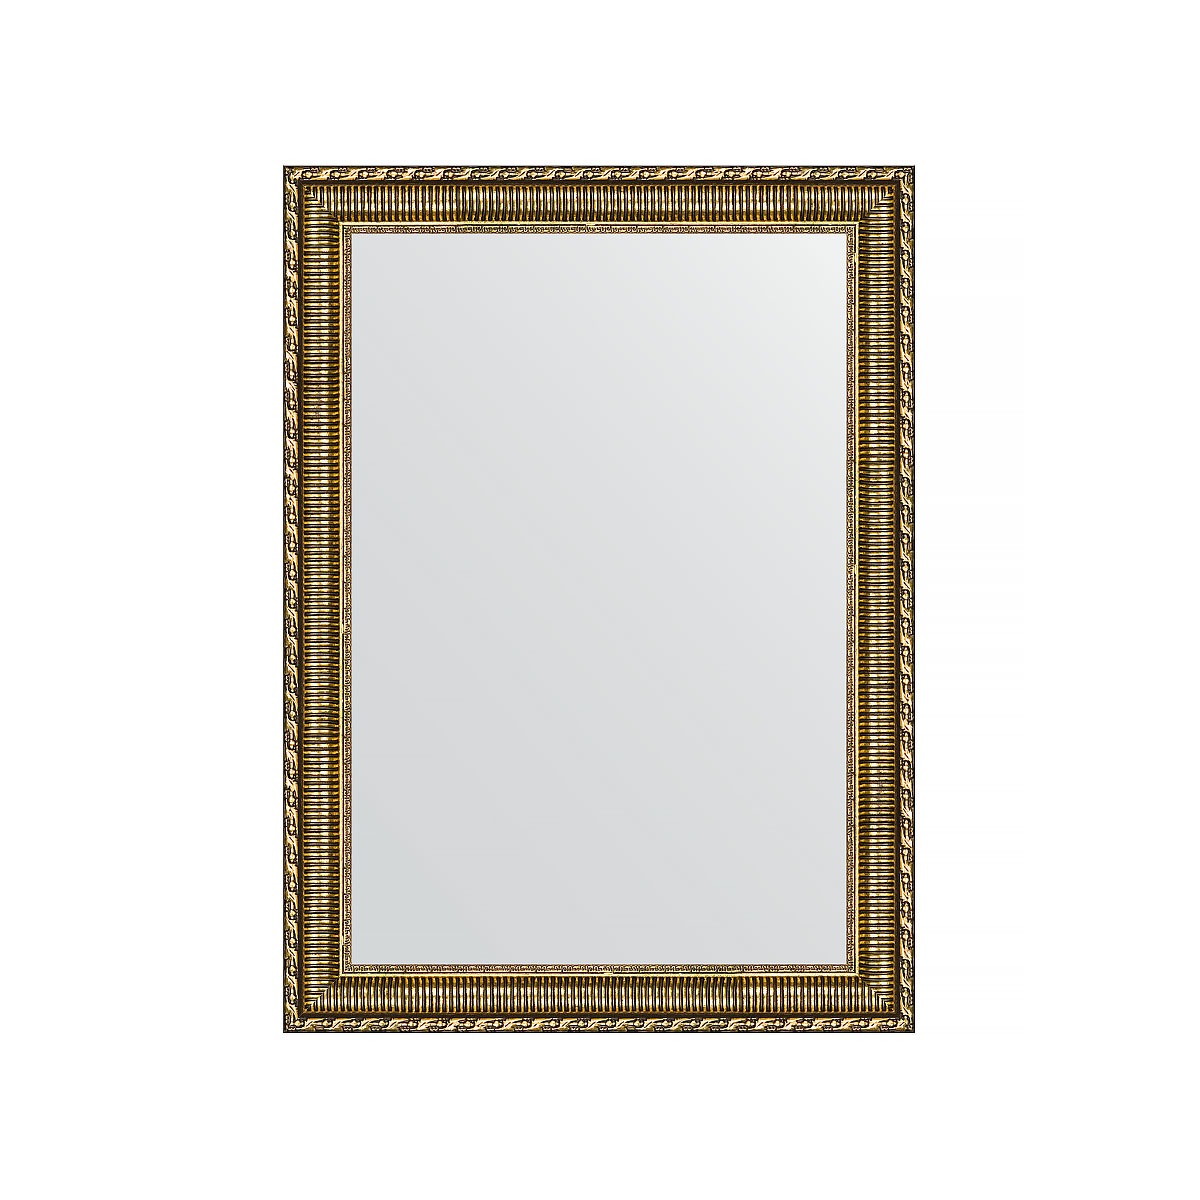 Зеркало в багетной раме Evoform золотой акведук 61 мм 54х74 см зеркало evoform в багетной раме 56х76см bx 1229